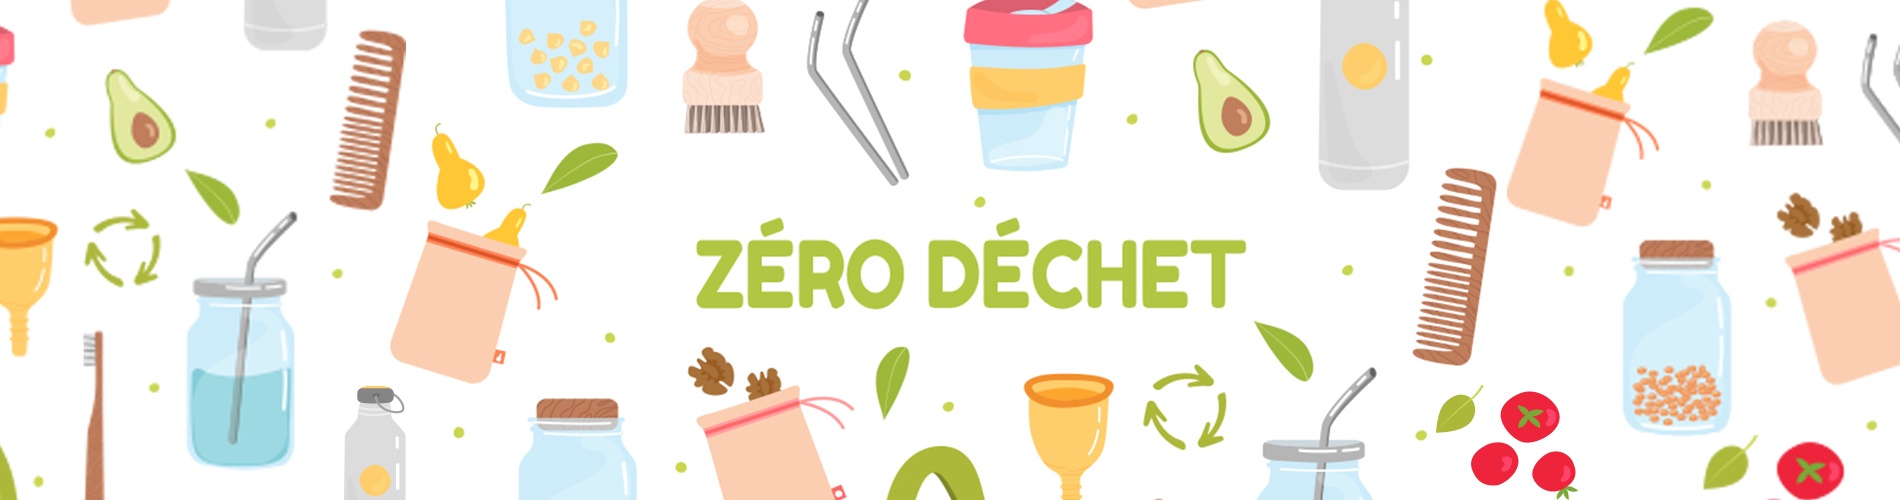 Objectif Zéro Déchet en Cuisine : les équipements utiles !